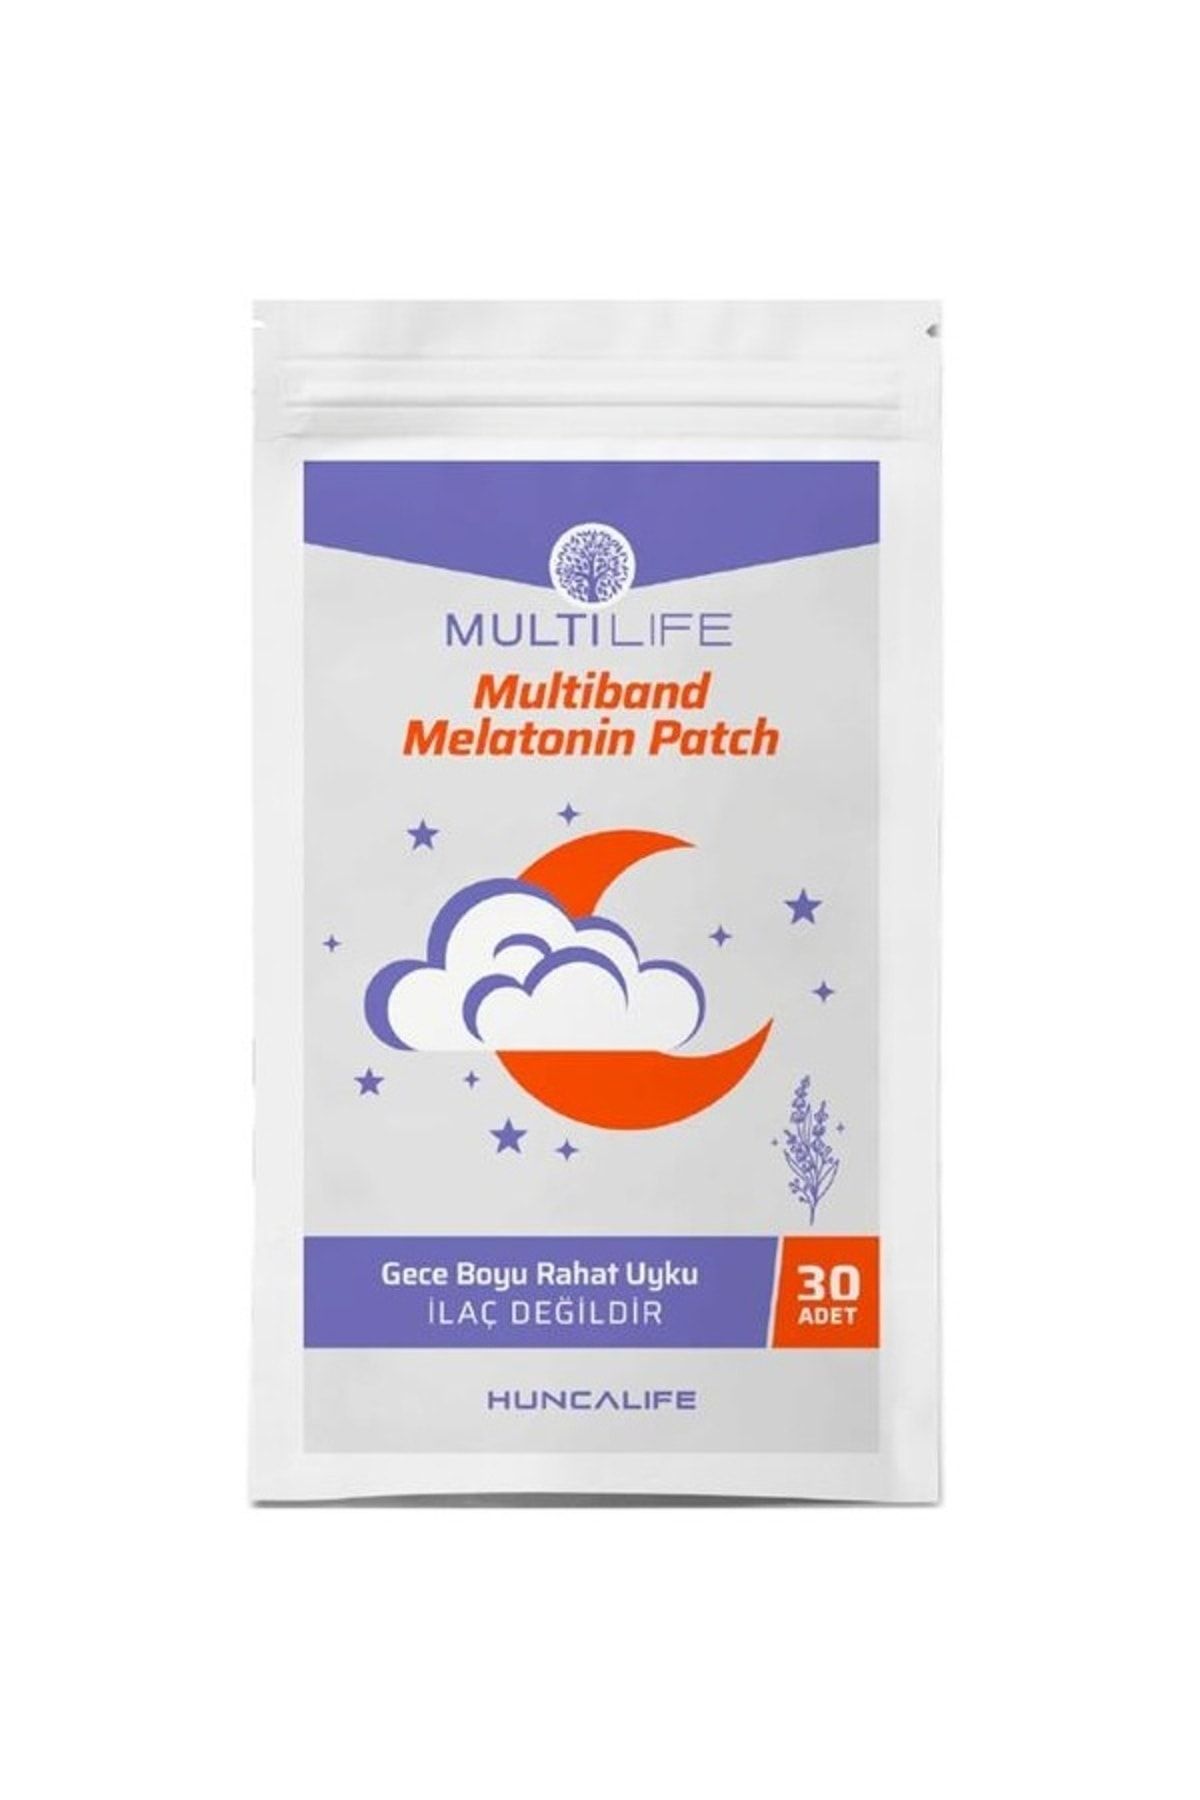 Huncalife Multilife MultiBand Melatonin Patch 30'lu